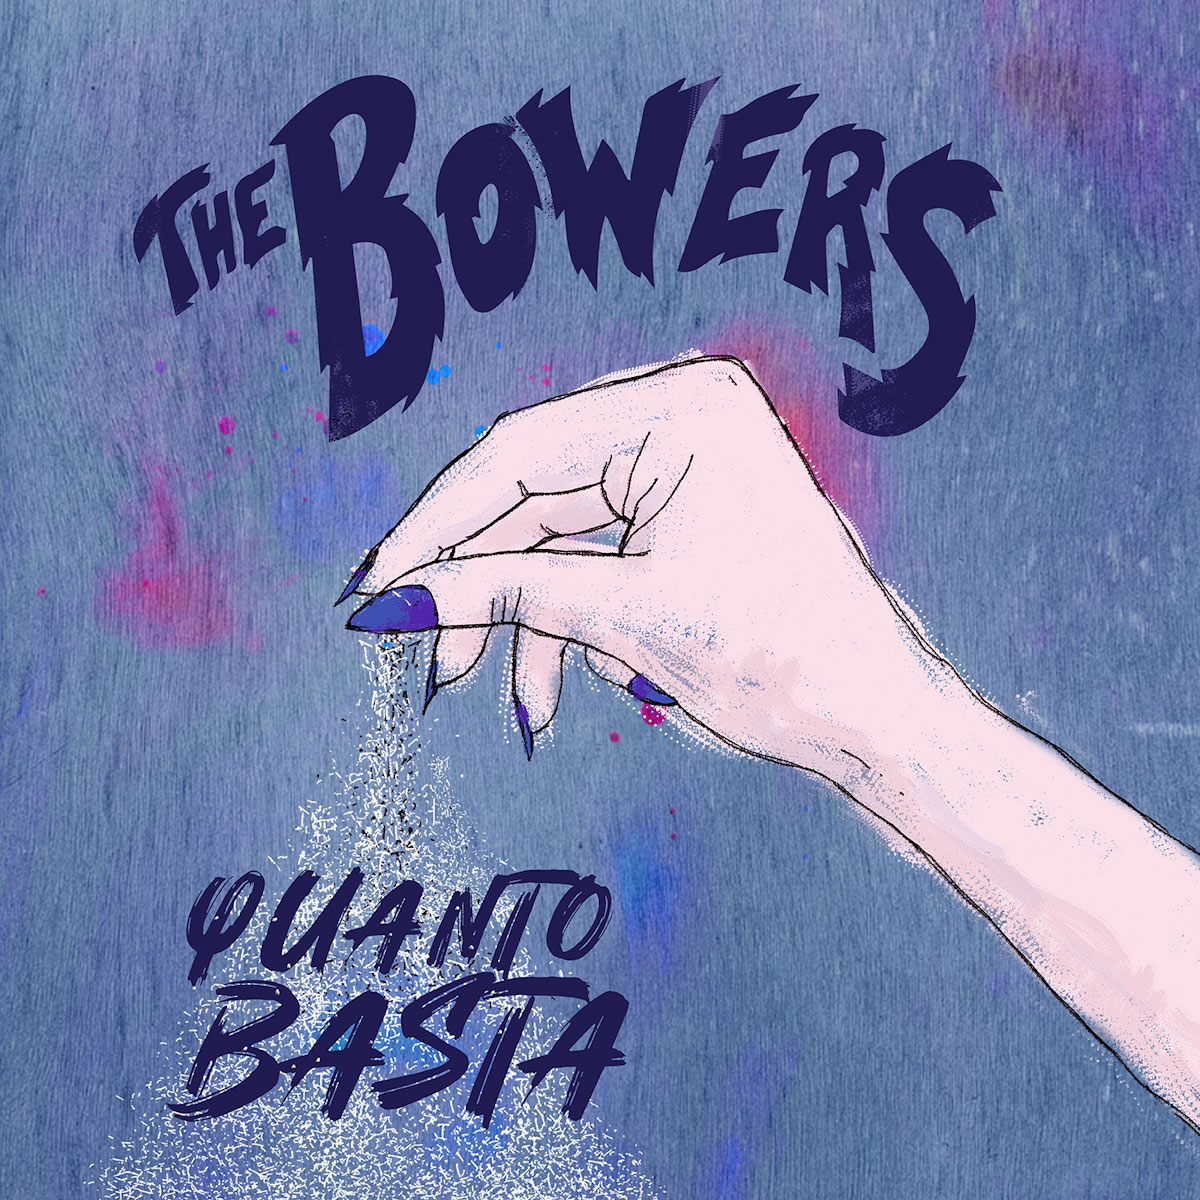 Al momento stai visualizzando “Quanto basta” è il singolo d’esordio dei The Bowers